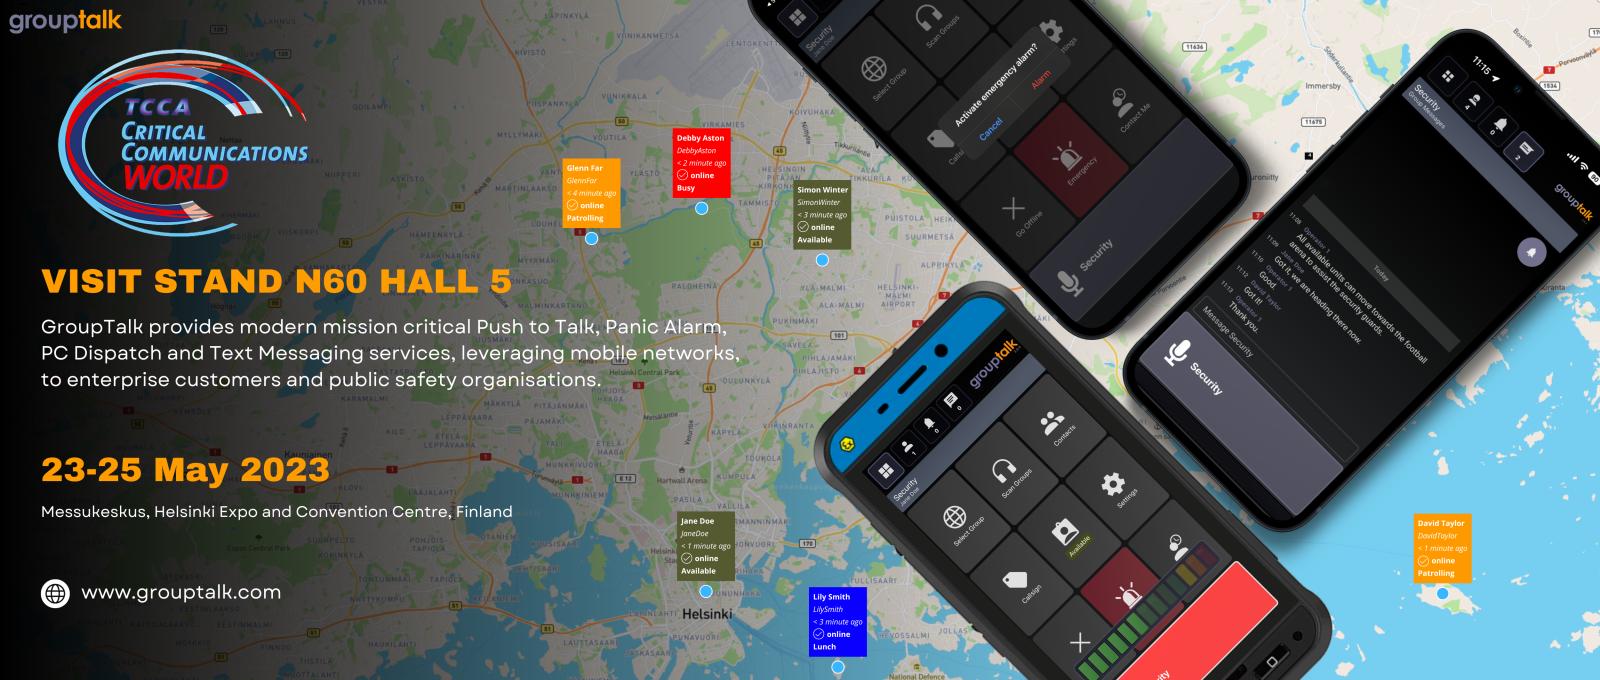 GroupTalk PC Dispatch med iOS användare och Ecom Smart-Ex02 CCW